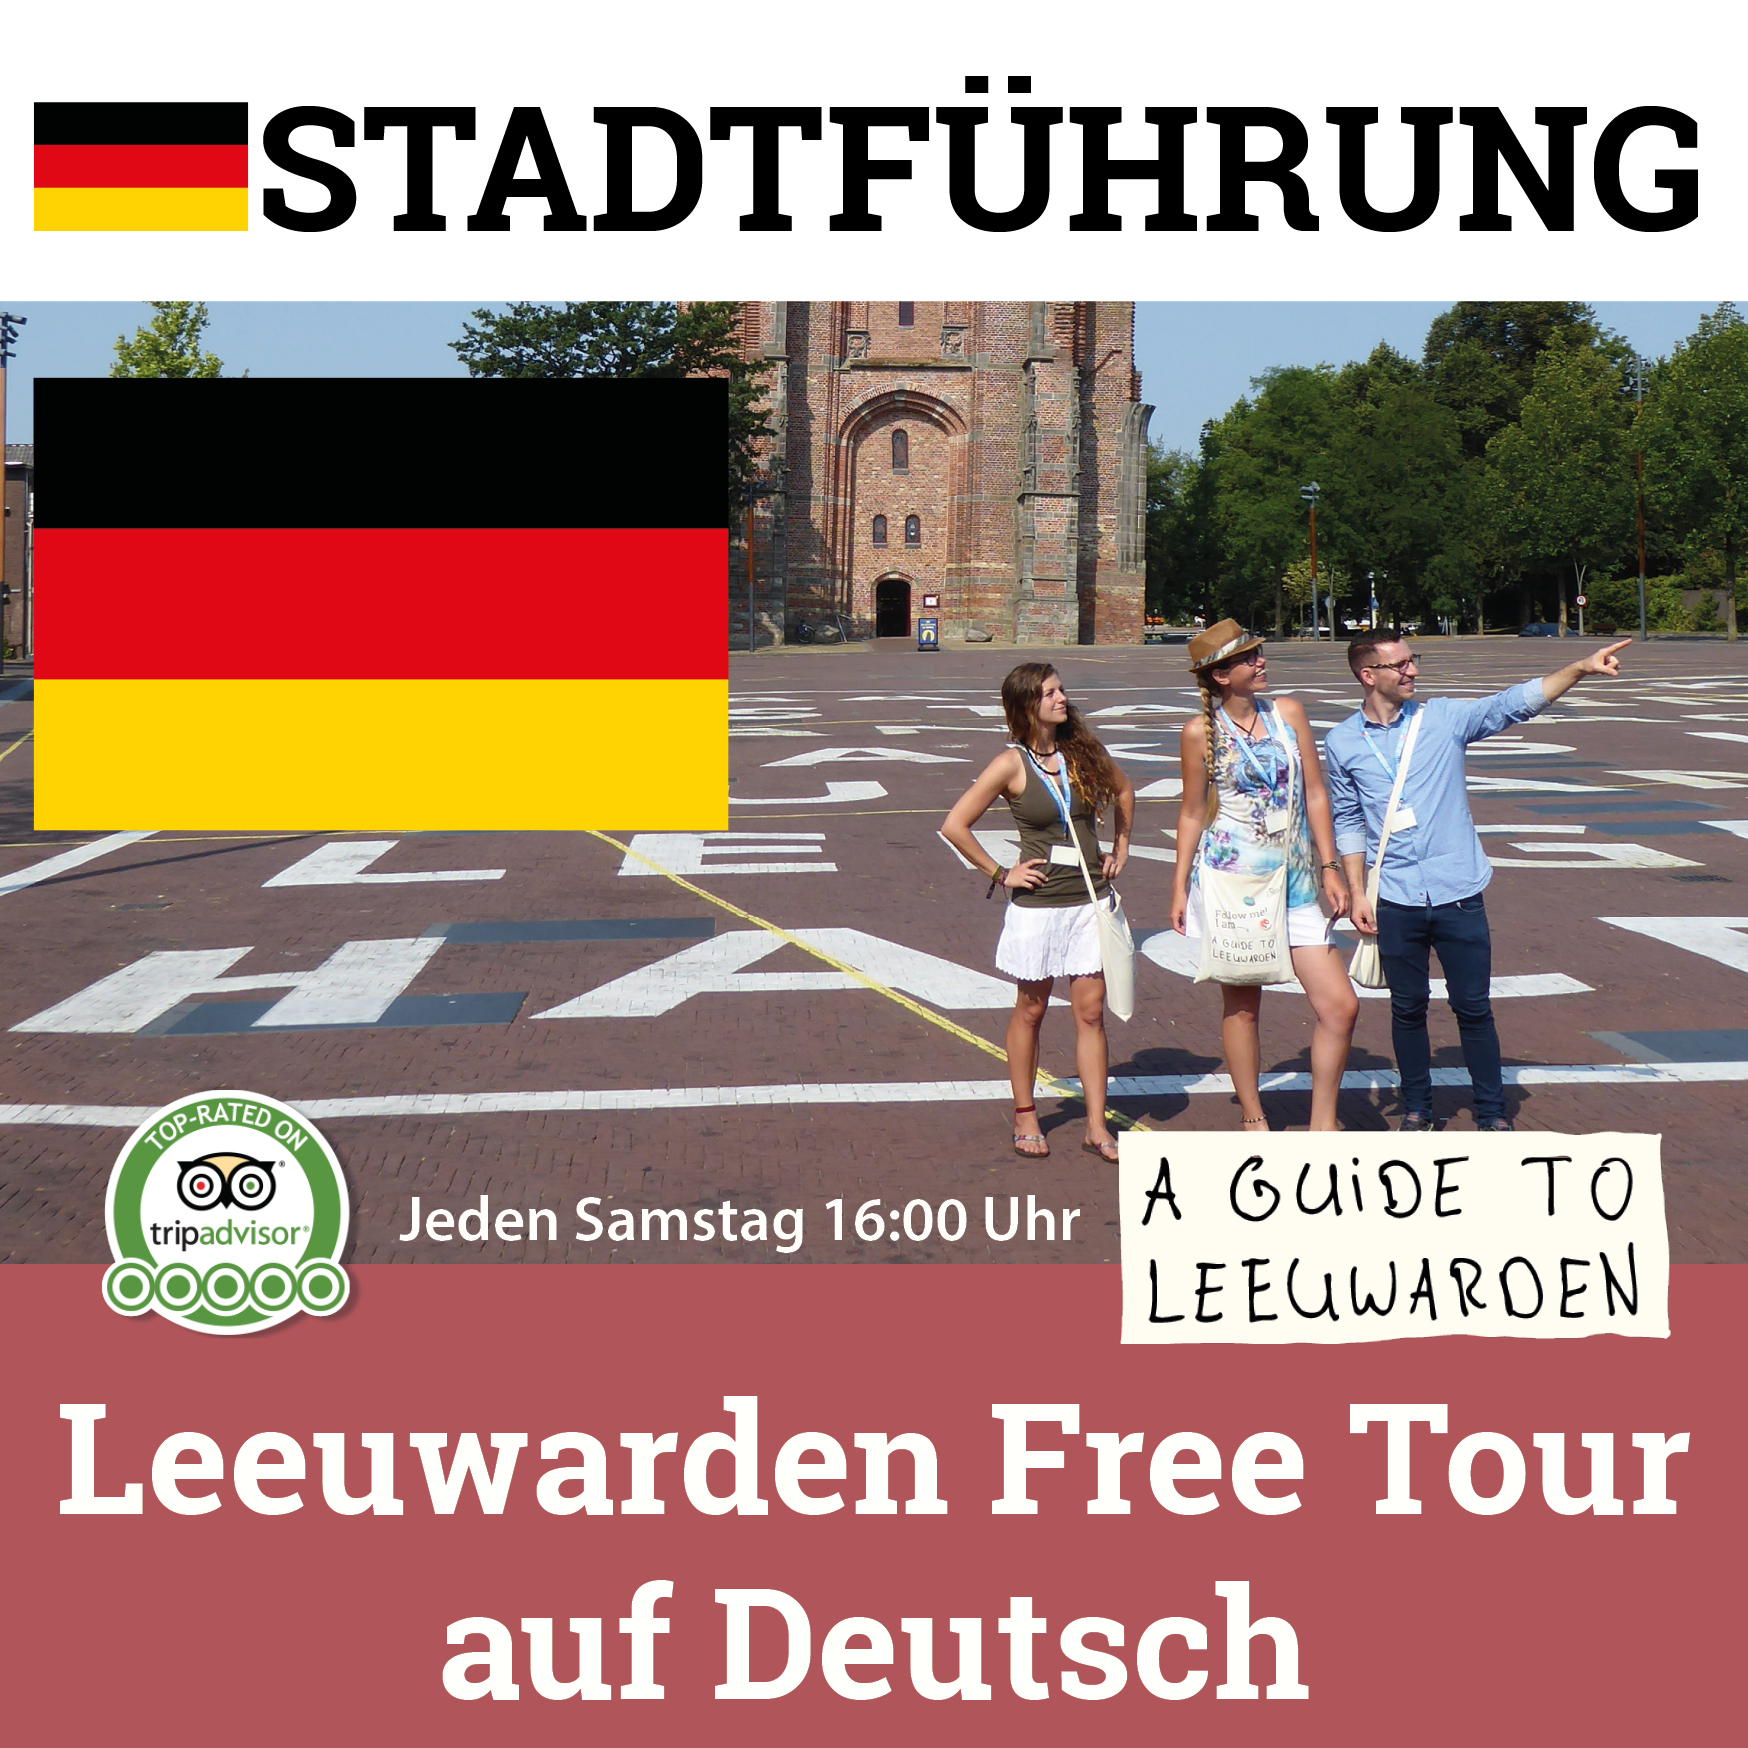 join tour auf deutsch